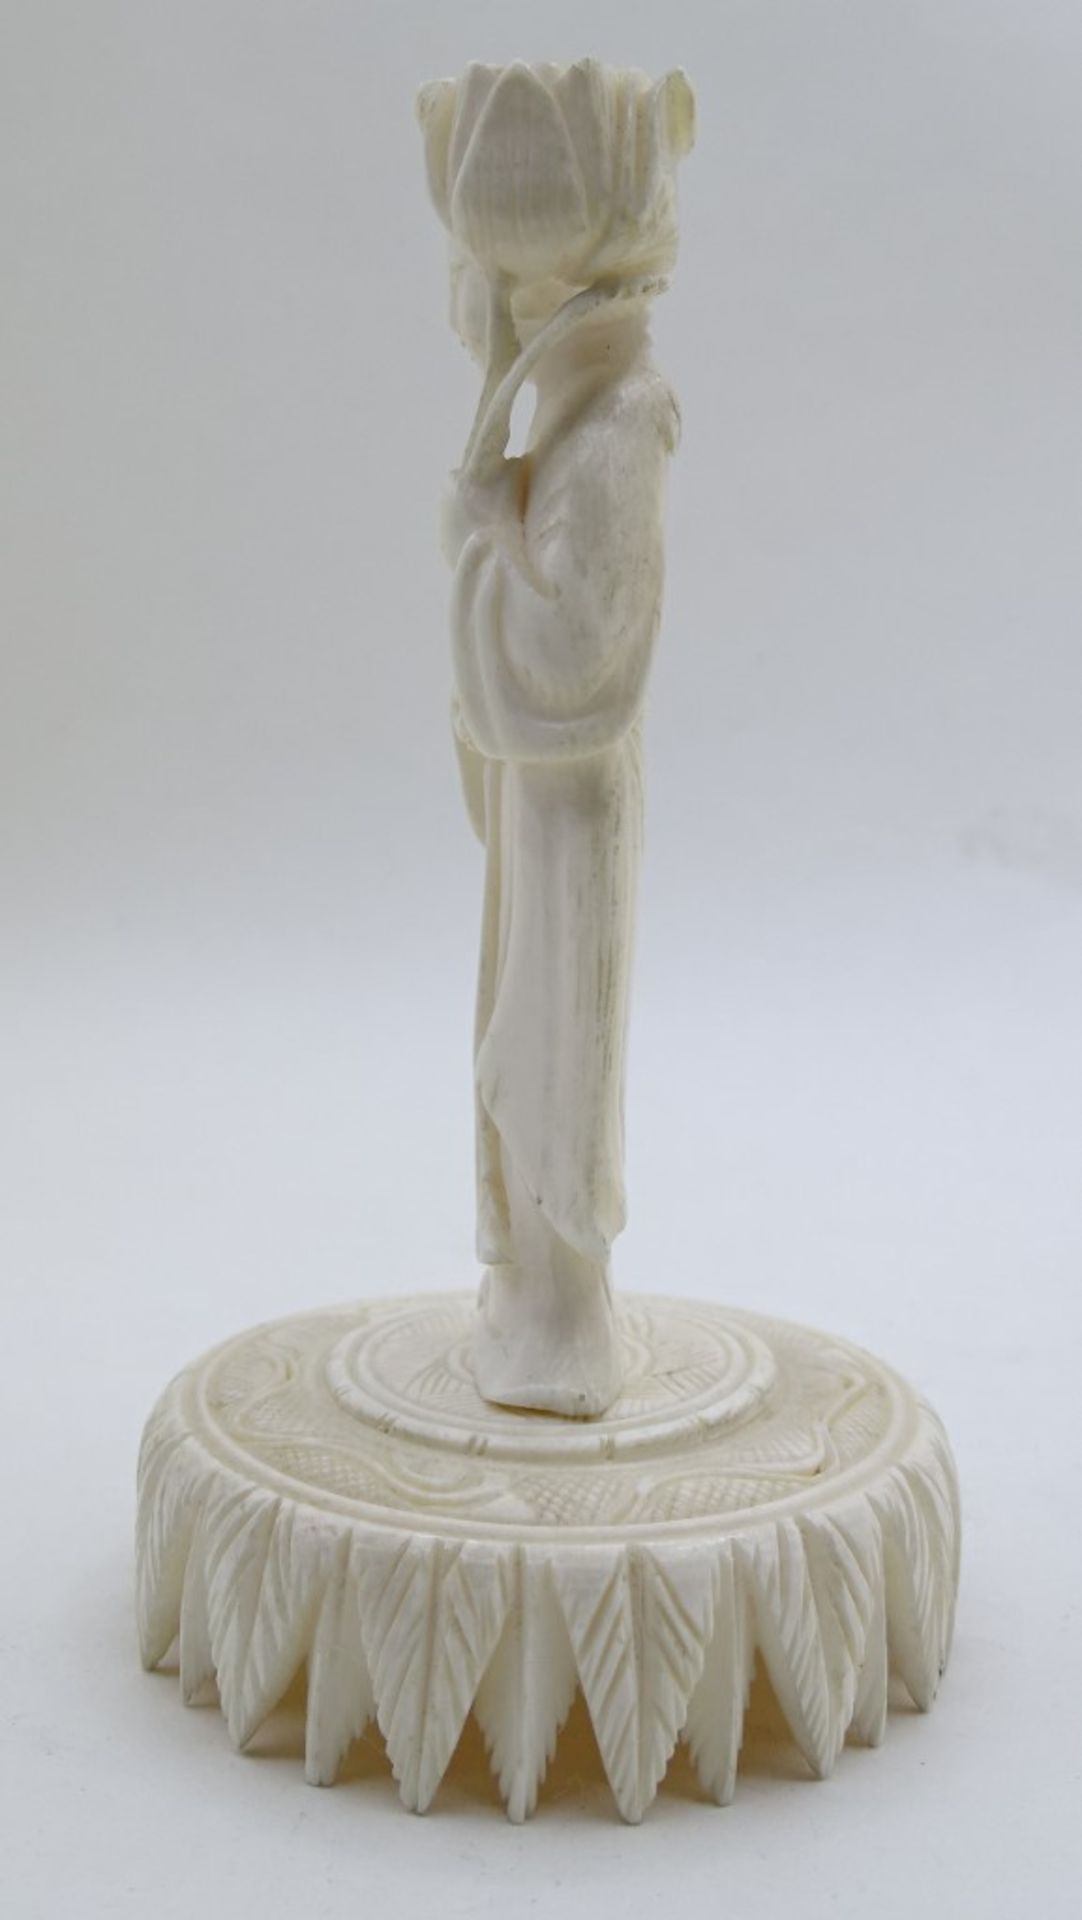 Geschnitzte Frauenfigur auf rundem Podest, Bei oder Beinimitat, China, H. 12,5 cm, mit Altersspuren - Bild 4 aus 4